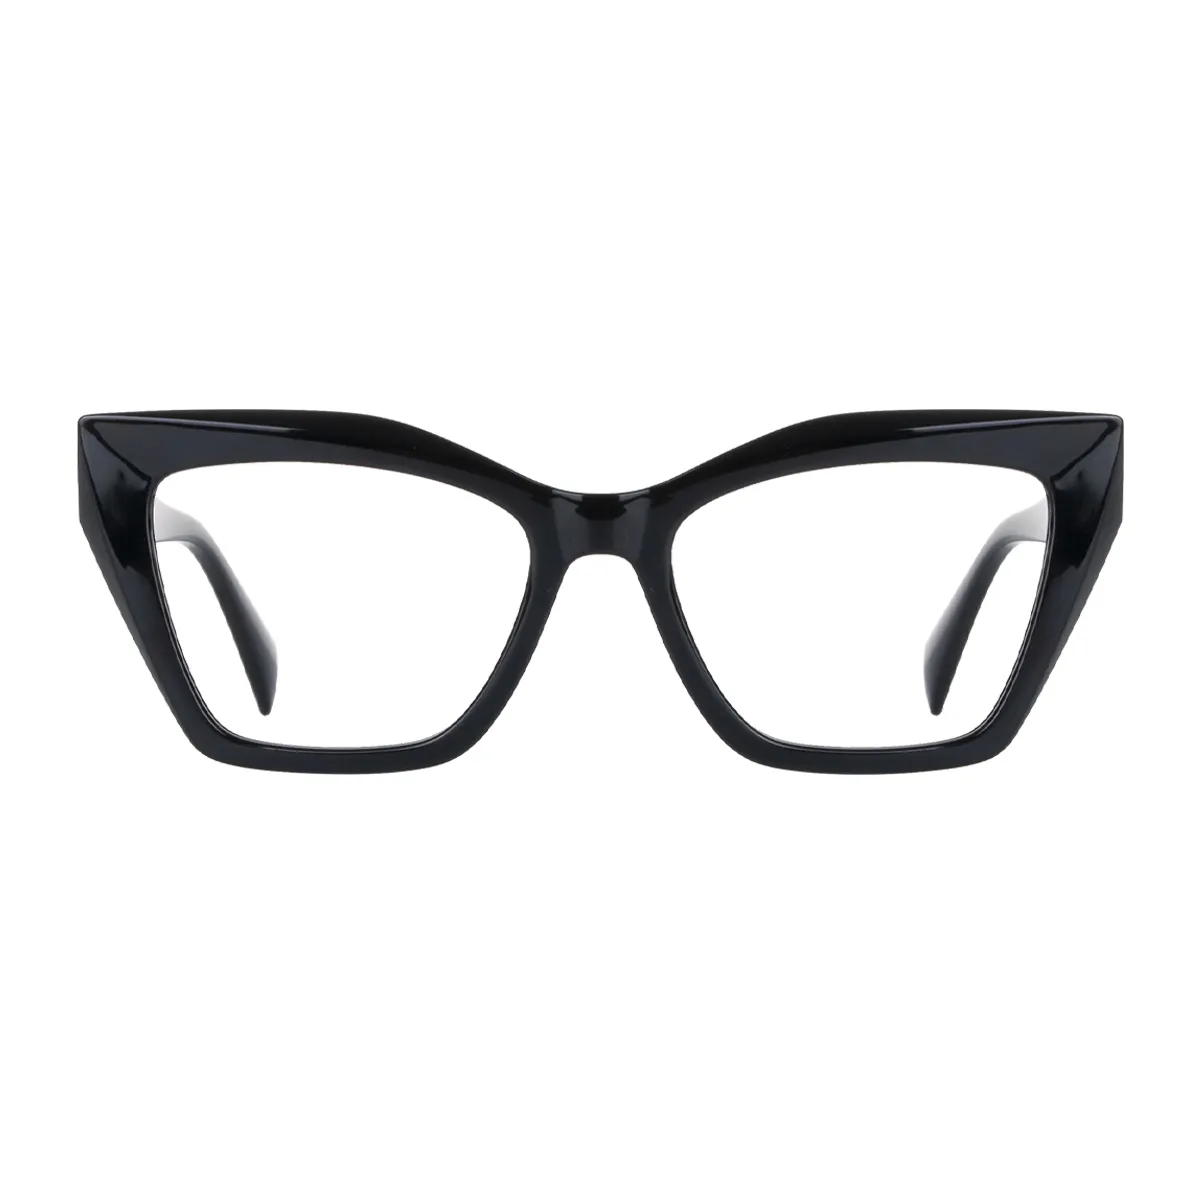 Panthera - Cat-Eye Black Glasses for Women